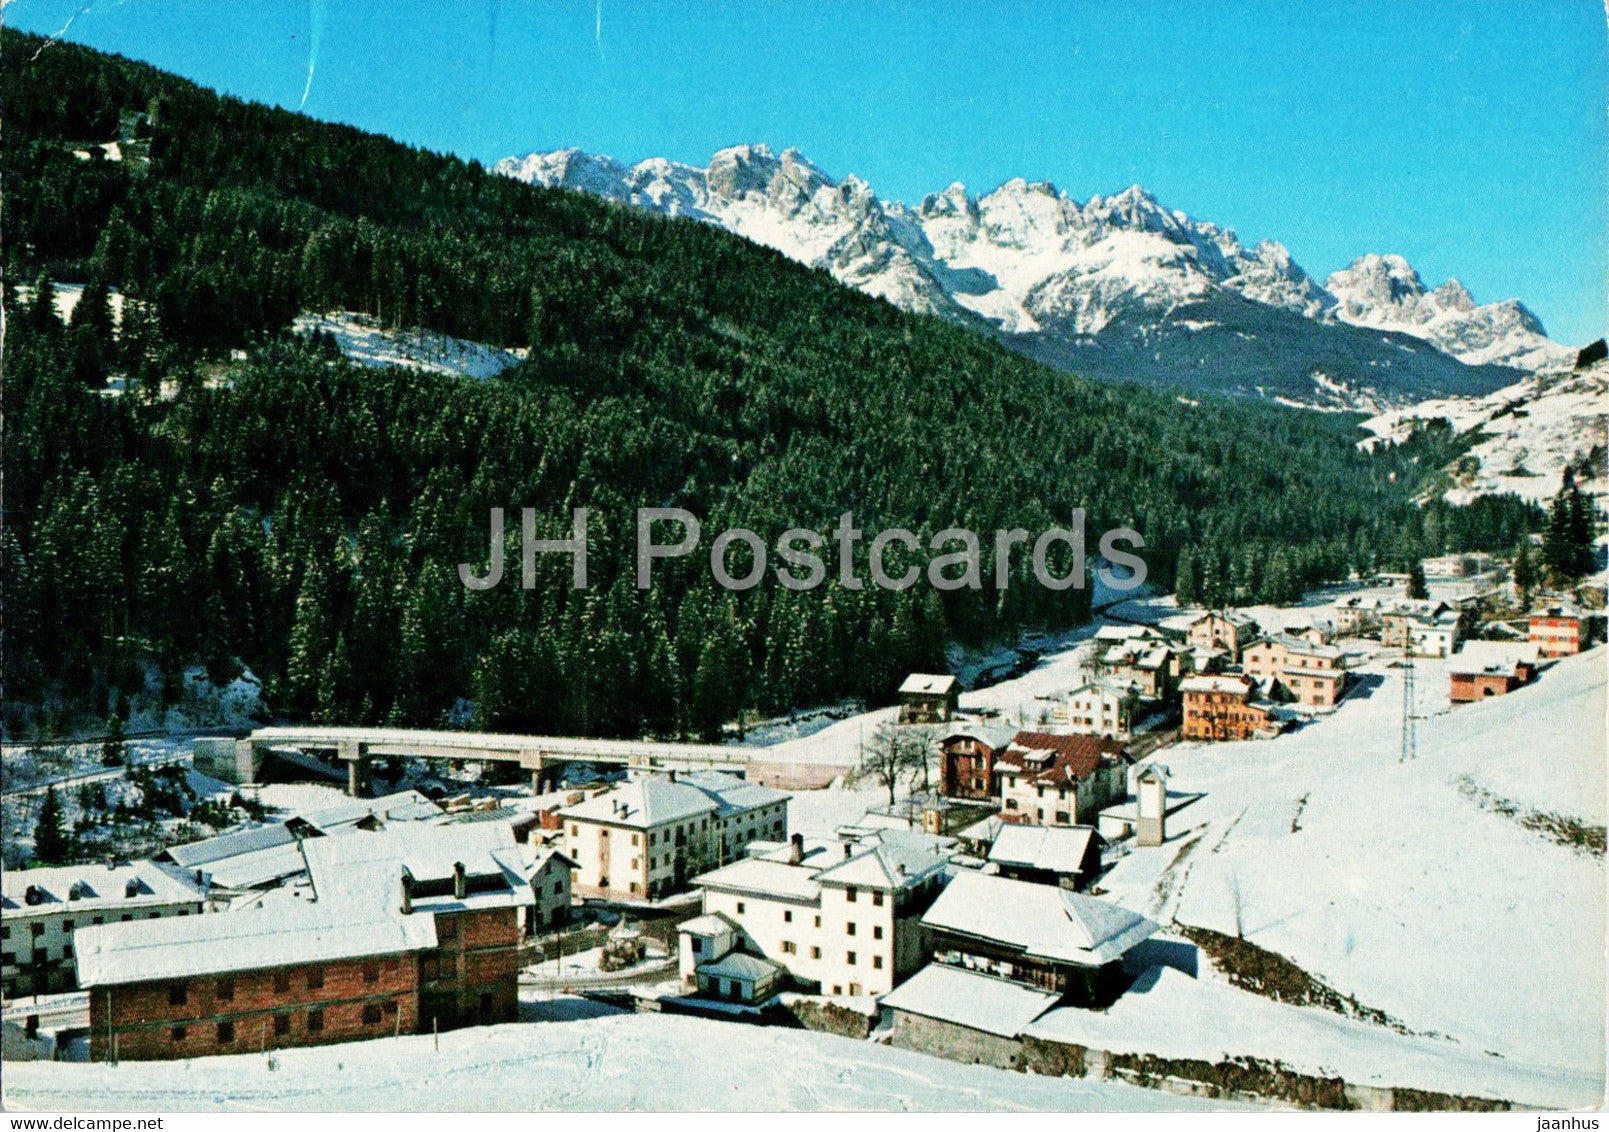 Campitello di S Nicolo Comelico 957 m- 1977 - Italy - used - JH Postcards